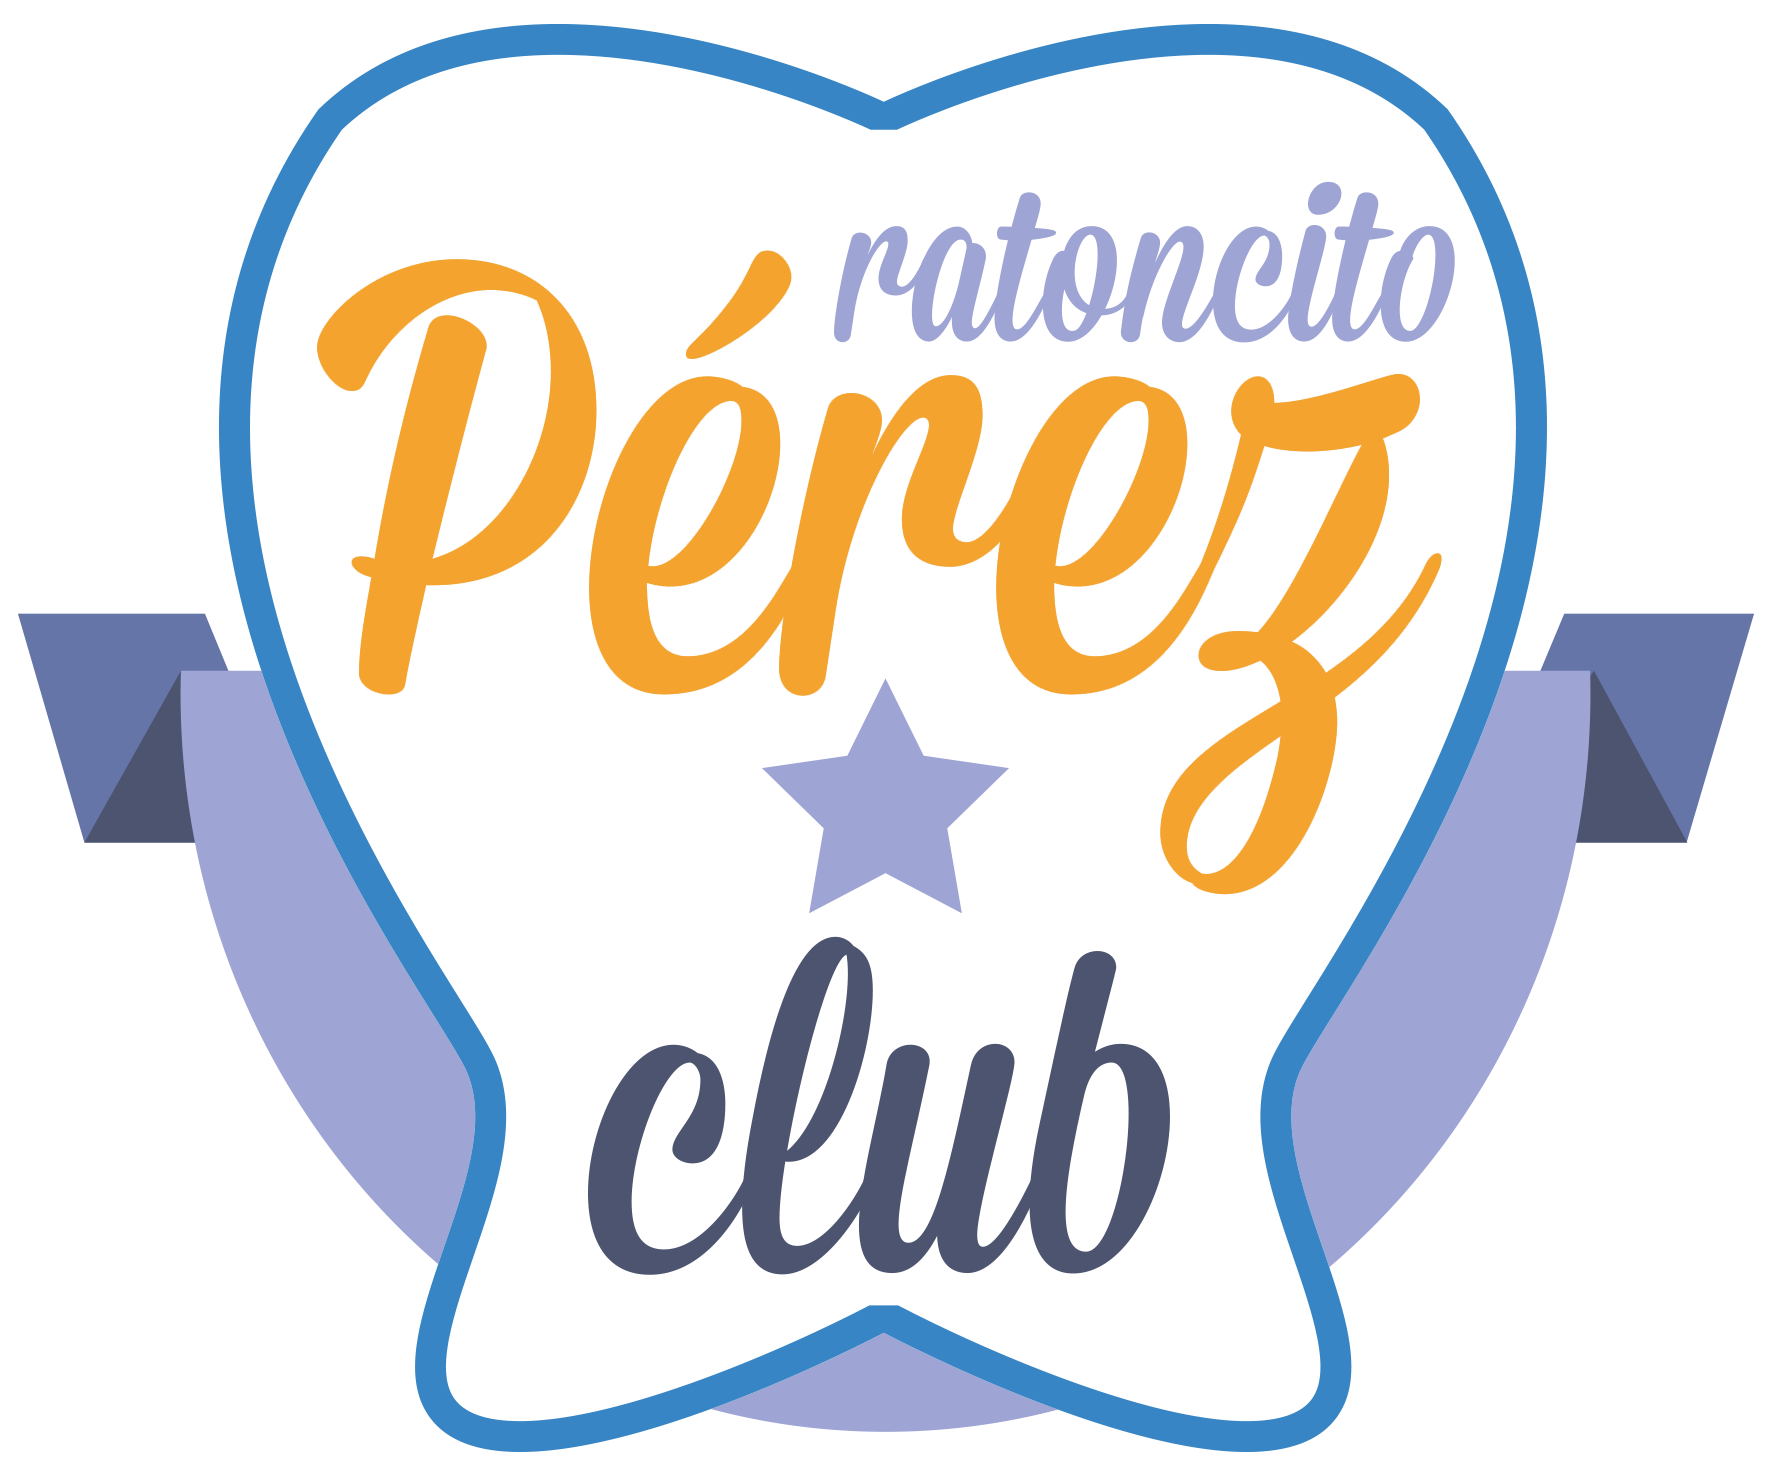 Clínica Ratoncito Pérez Barcelona Clínica Dental para niños del Club Ratoncito Pérez